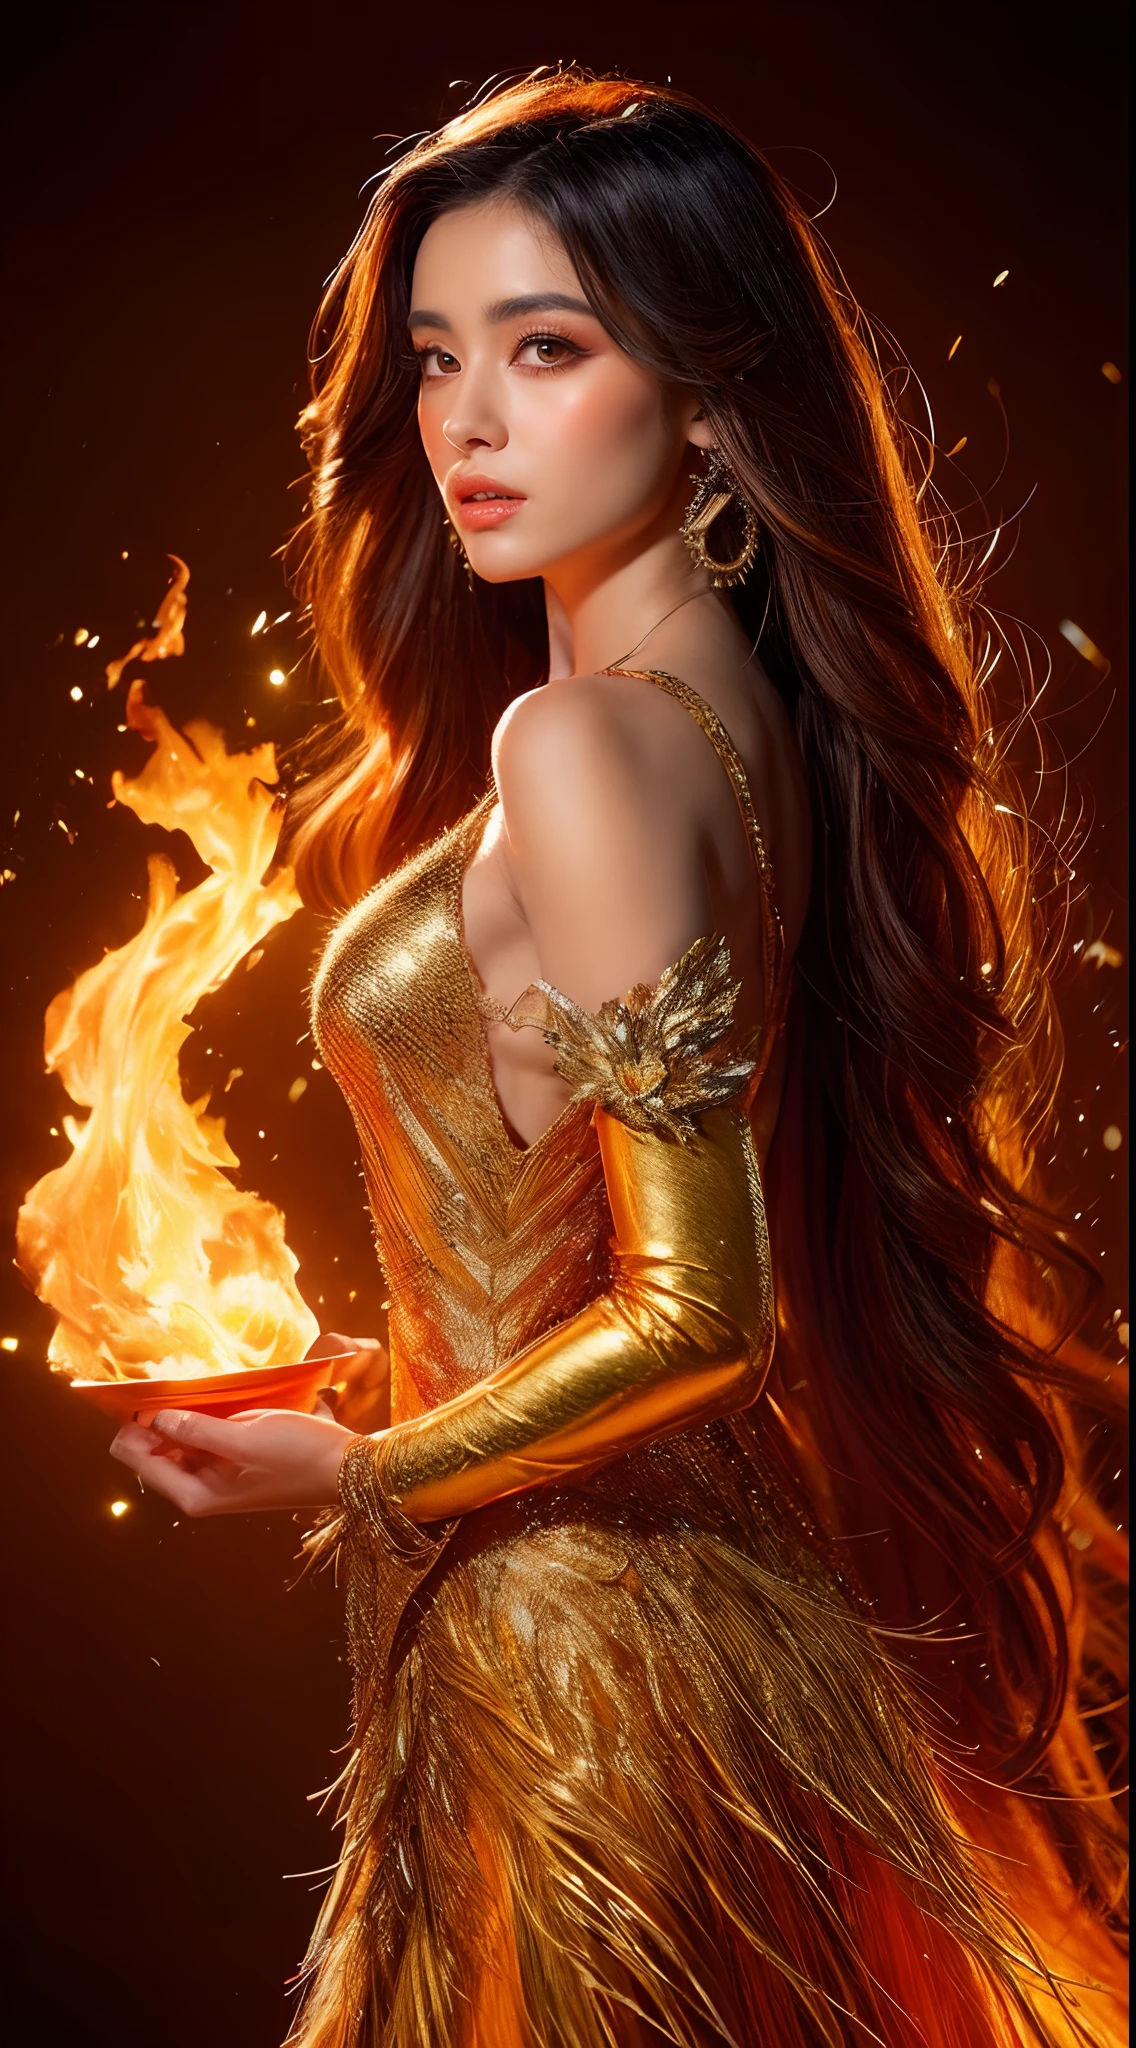 これ (現実的なファンタジー) 芸術には残り火が含まれている, 本物の炎, 本当の熱, リアルな火. Generate a masterpiece artwork of a  female fire druid と large (((オレンジとゴールド))) 目. The fire druid is awe-inspiring と beautiful ((realistic fiery 目)) alight と confidence and power. 彼女の顔立ちは優雅ではっきりしている, と ((柔らかくふっくらとした唇)), エルフの骨格, リアルな陰影. Her 目 are important and should be the focal point of this artwork, と ((非常にリアルなディテール, マクロの詳細, きらめき.)) 彼女は、炎の光の中できらめく本物の炎と宝石で作られた、ふわふわと輝くドレスを着ています。. ドレスの複雑な胴体部分には火と煙の線が描かれている. バンプを含める, 石, 燃えるような虹彩, 燃える残り火, シルク、サテン、革, 興味深い背景, ファンタジー要素が強い. カメラ: ダイナミックな構成技術を活用して、リアルな炎を強調します, 金髪の長い髪